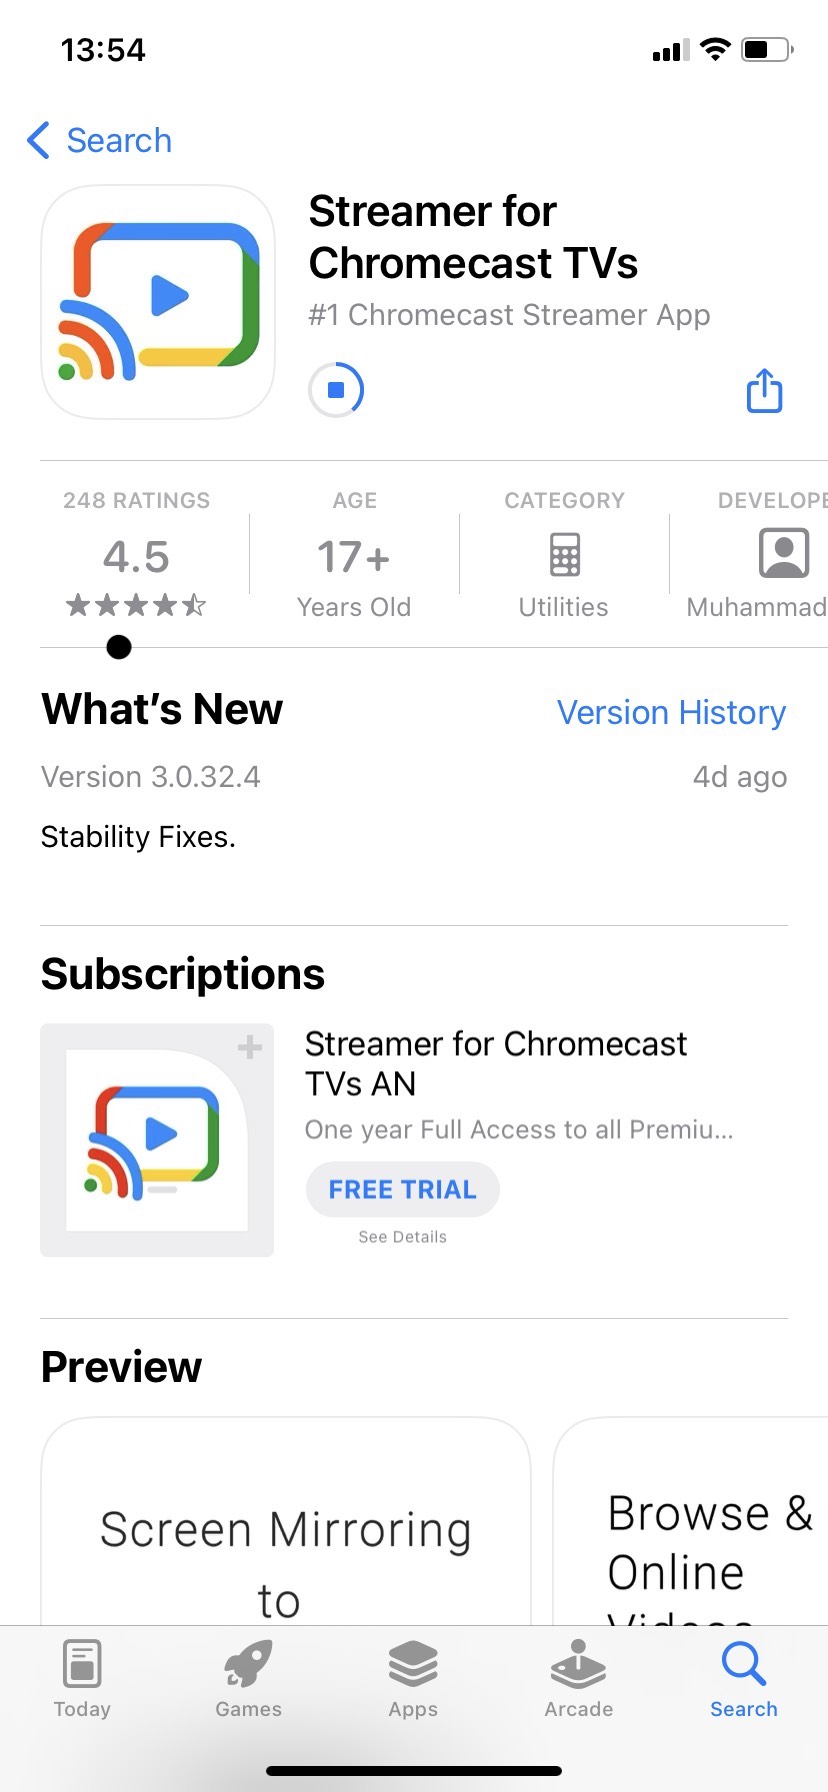 Streamer for Chromecast TVs screenshots